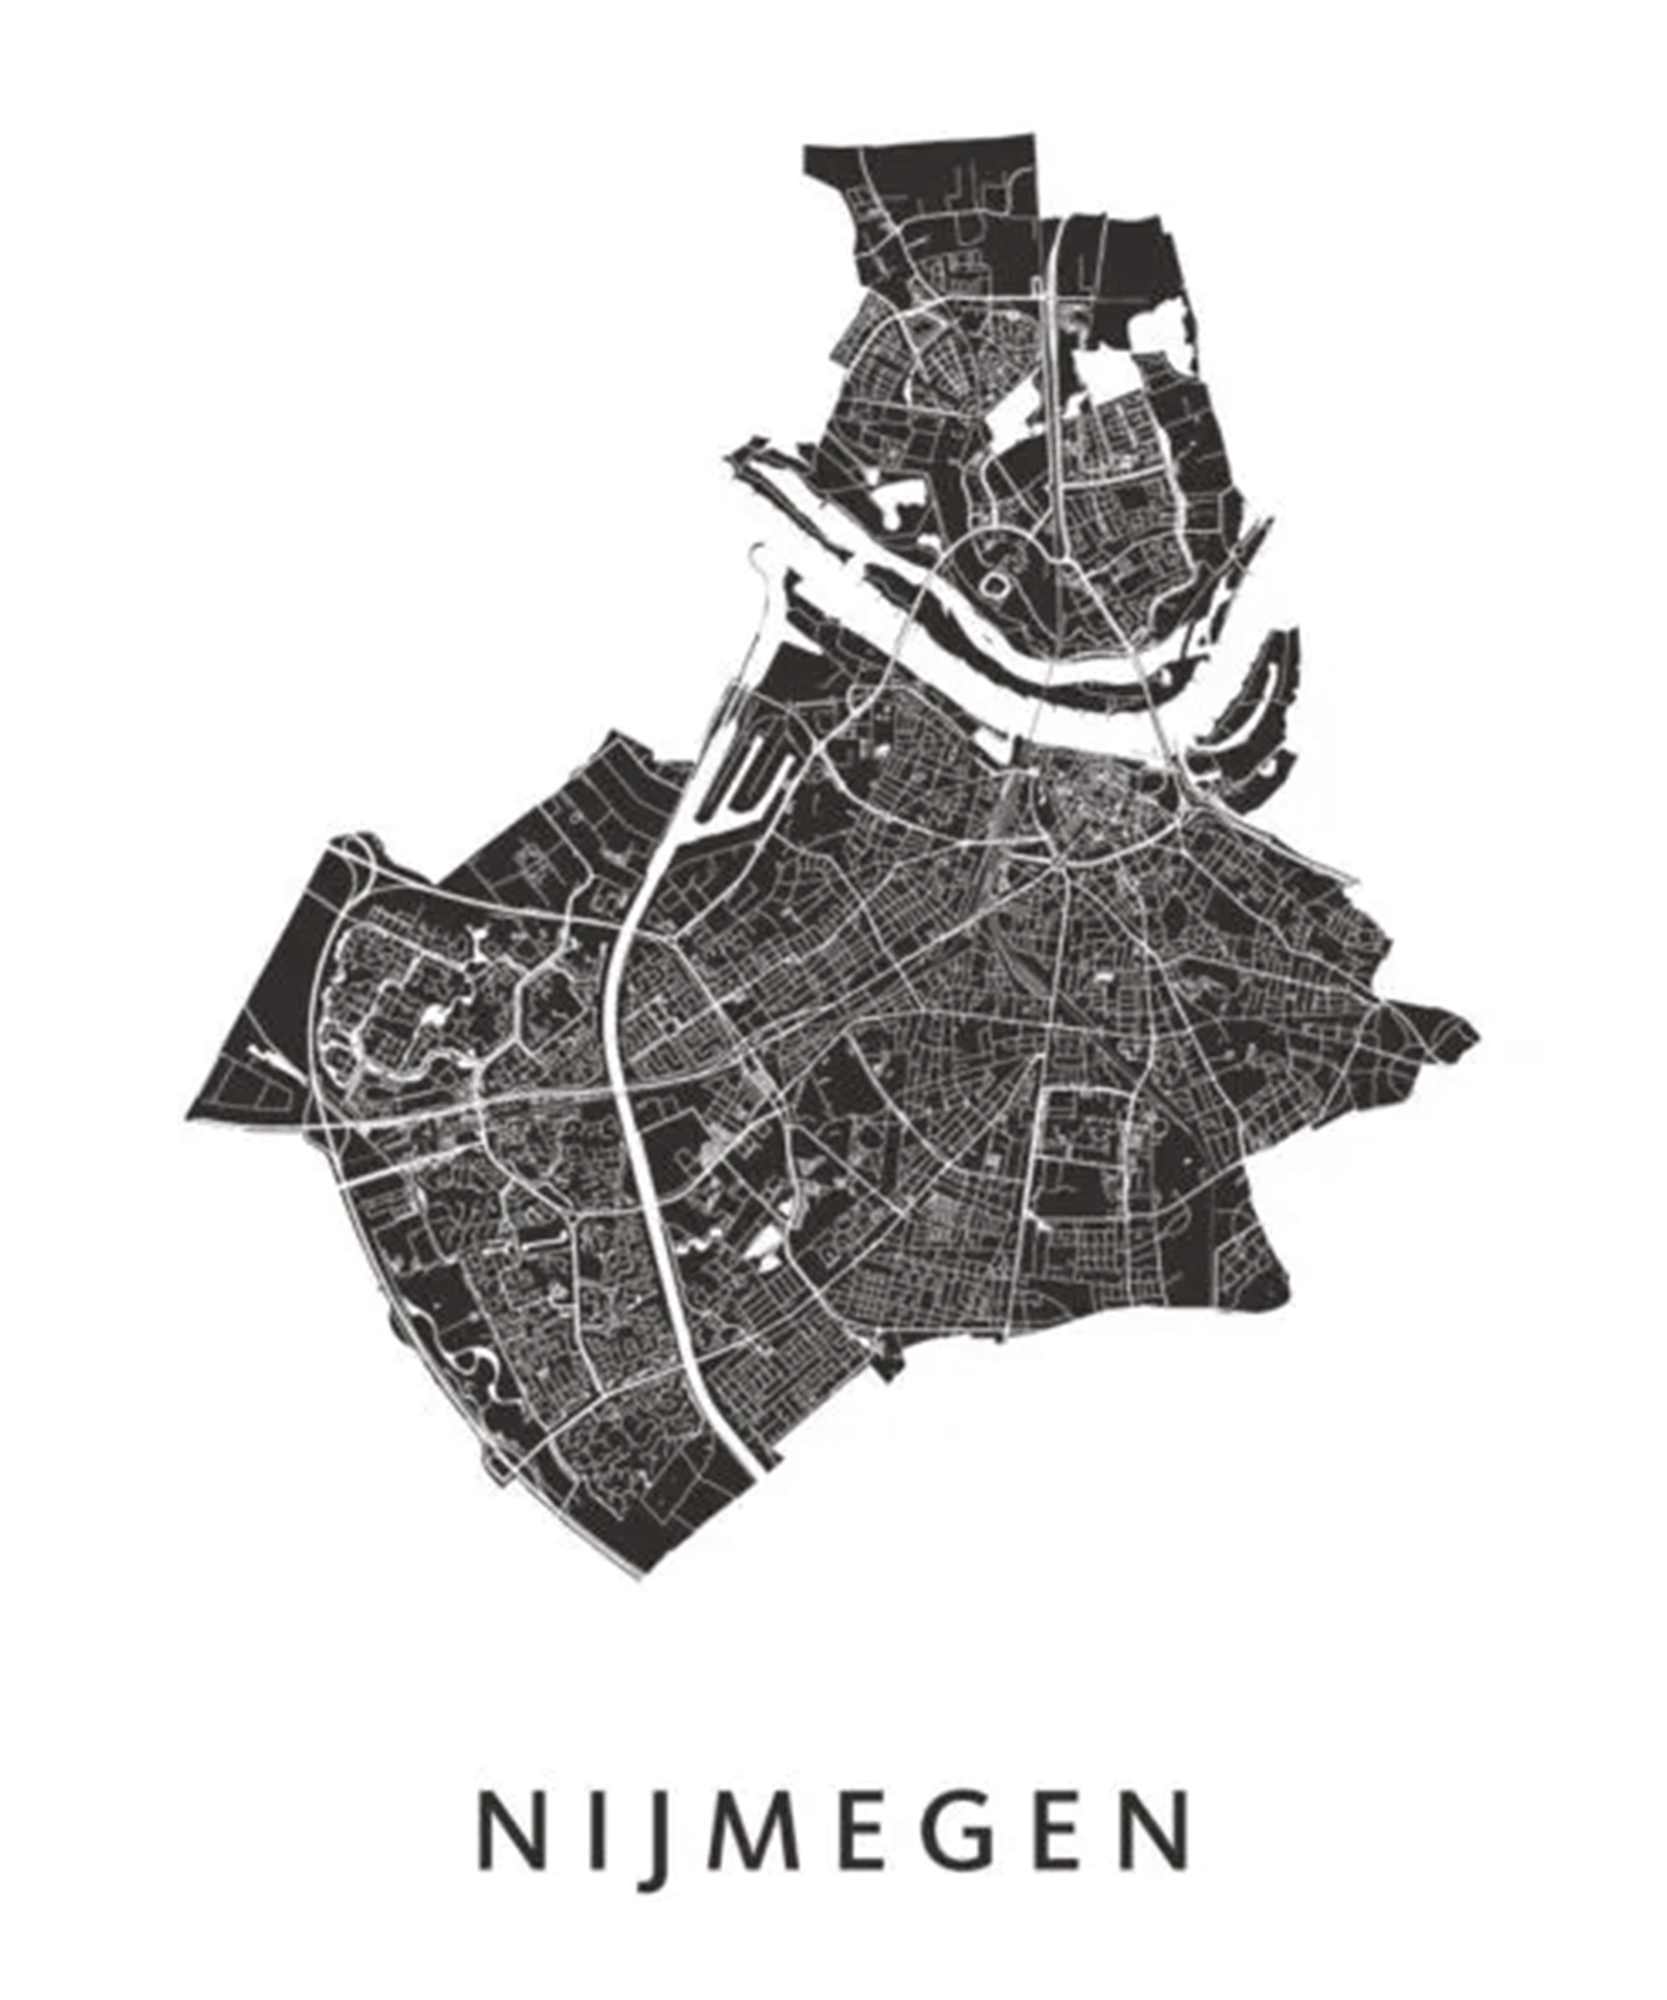 ILOVENIJMEGEN - Nijmegen Kaart - Schilderij - A3 Formaat